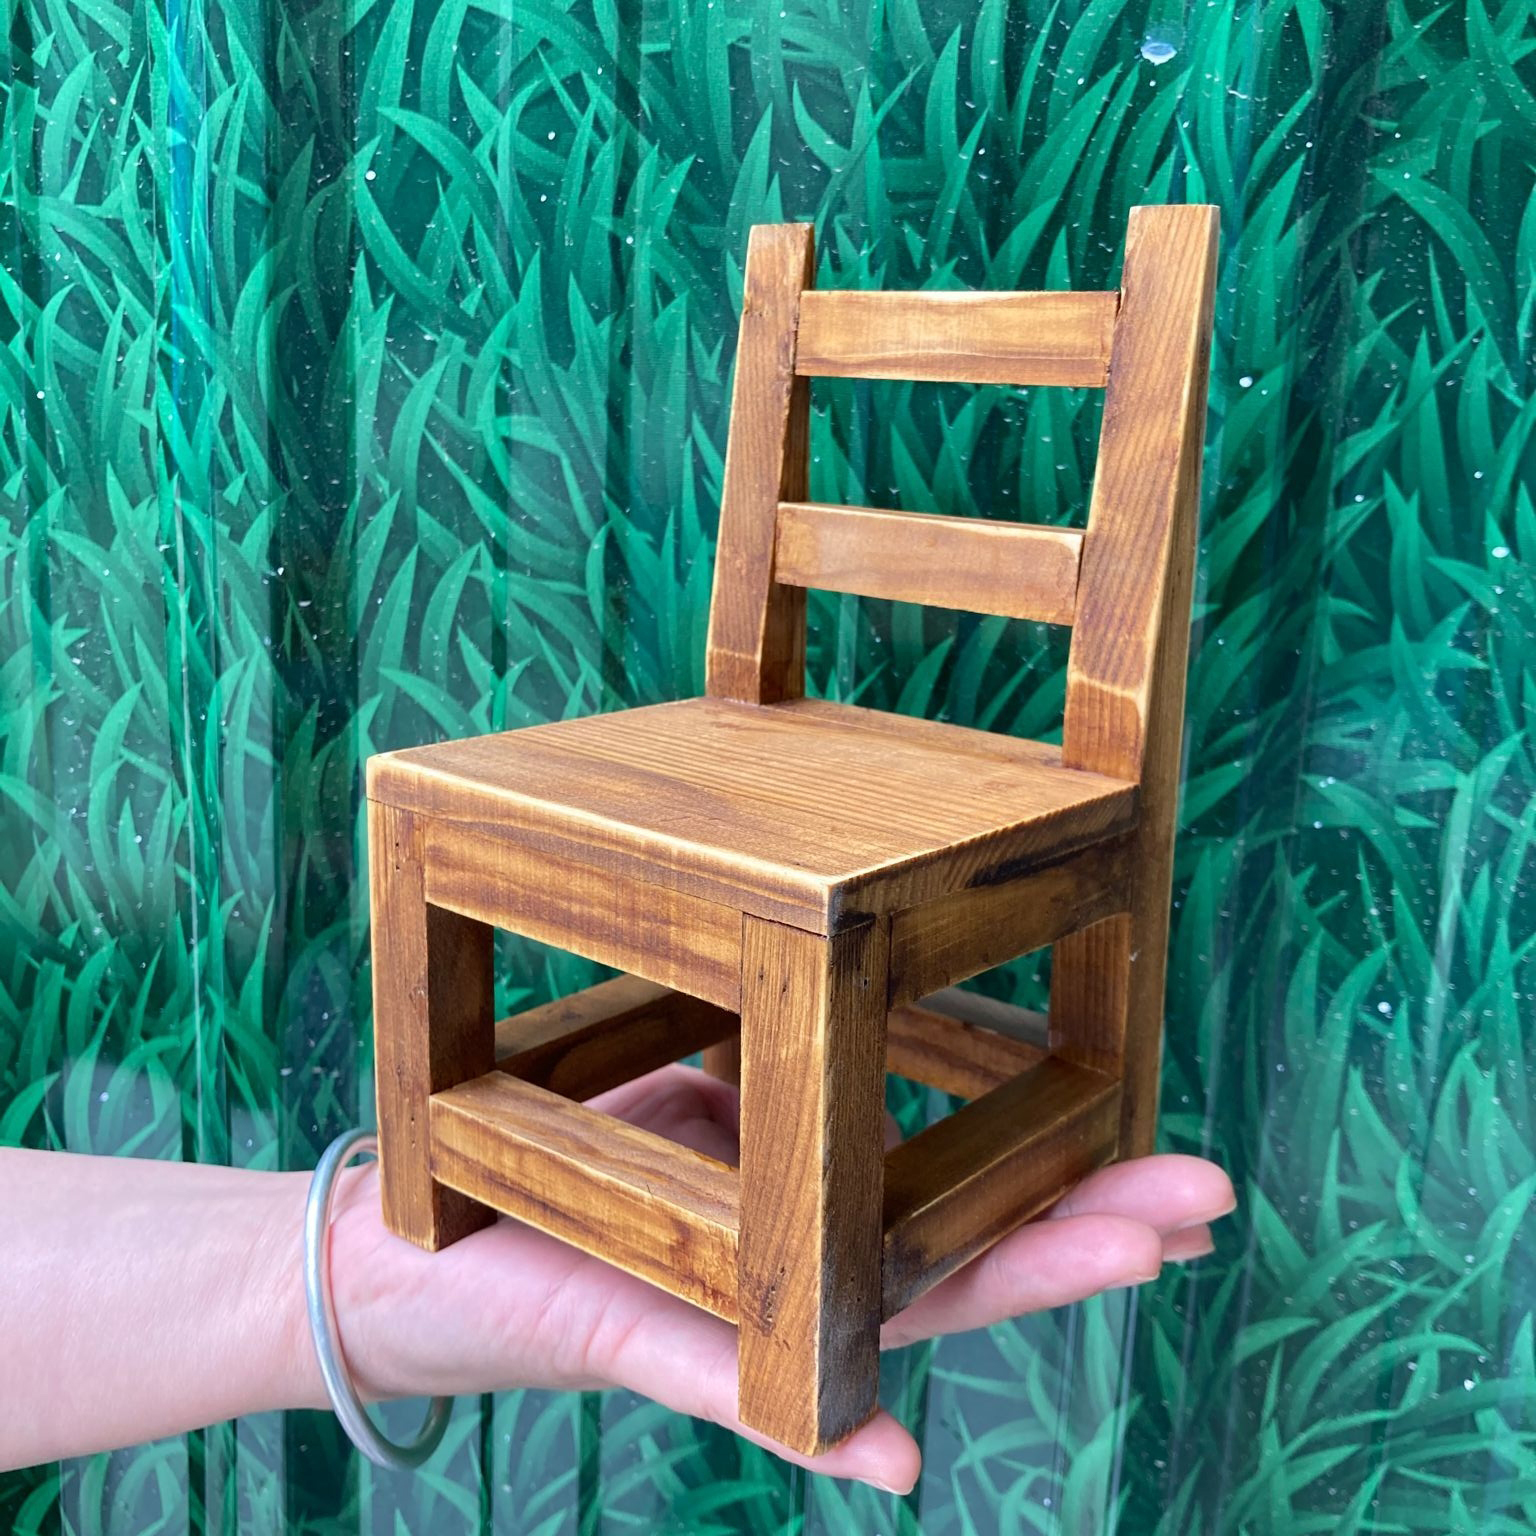 创意木质小凳子甜品台摆件家居桌面装饰摆件迷你方凳板凳拍照道具